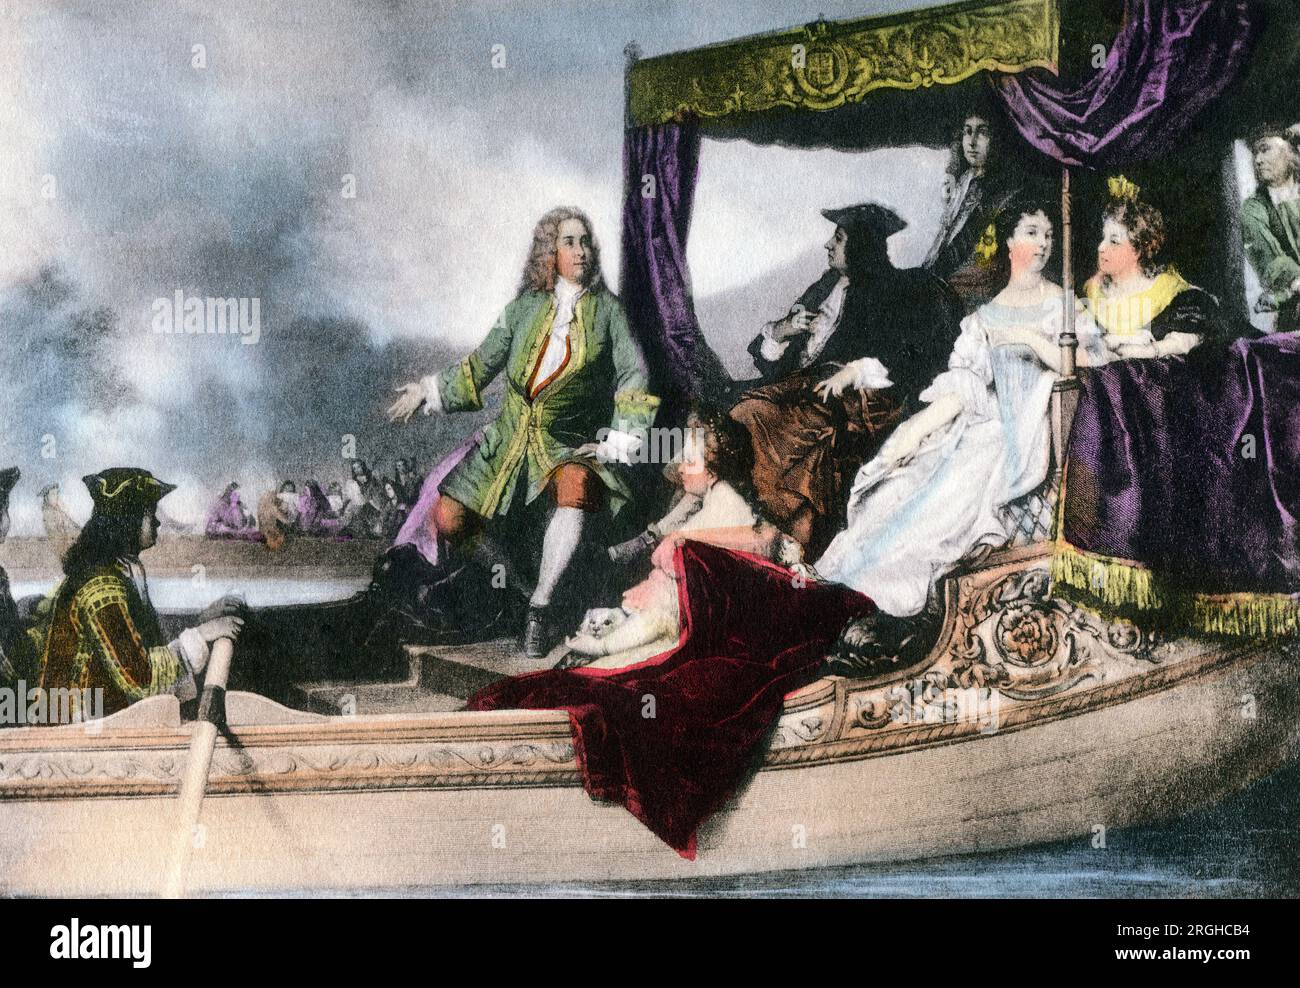 Jorge I de Gran Bretaña y el compositor George Handel en el barco fluvial durante el Festival del Agua, Río Támesis, Londres, Inglaterra, Reino Unido, 1715, Ilustración en color, artista no identificado Foto de stock